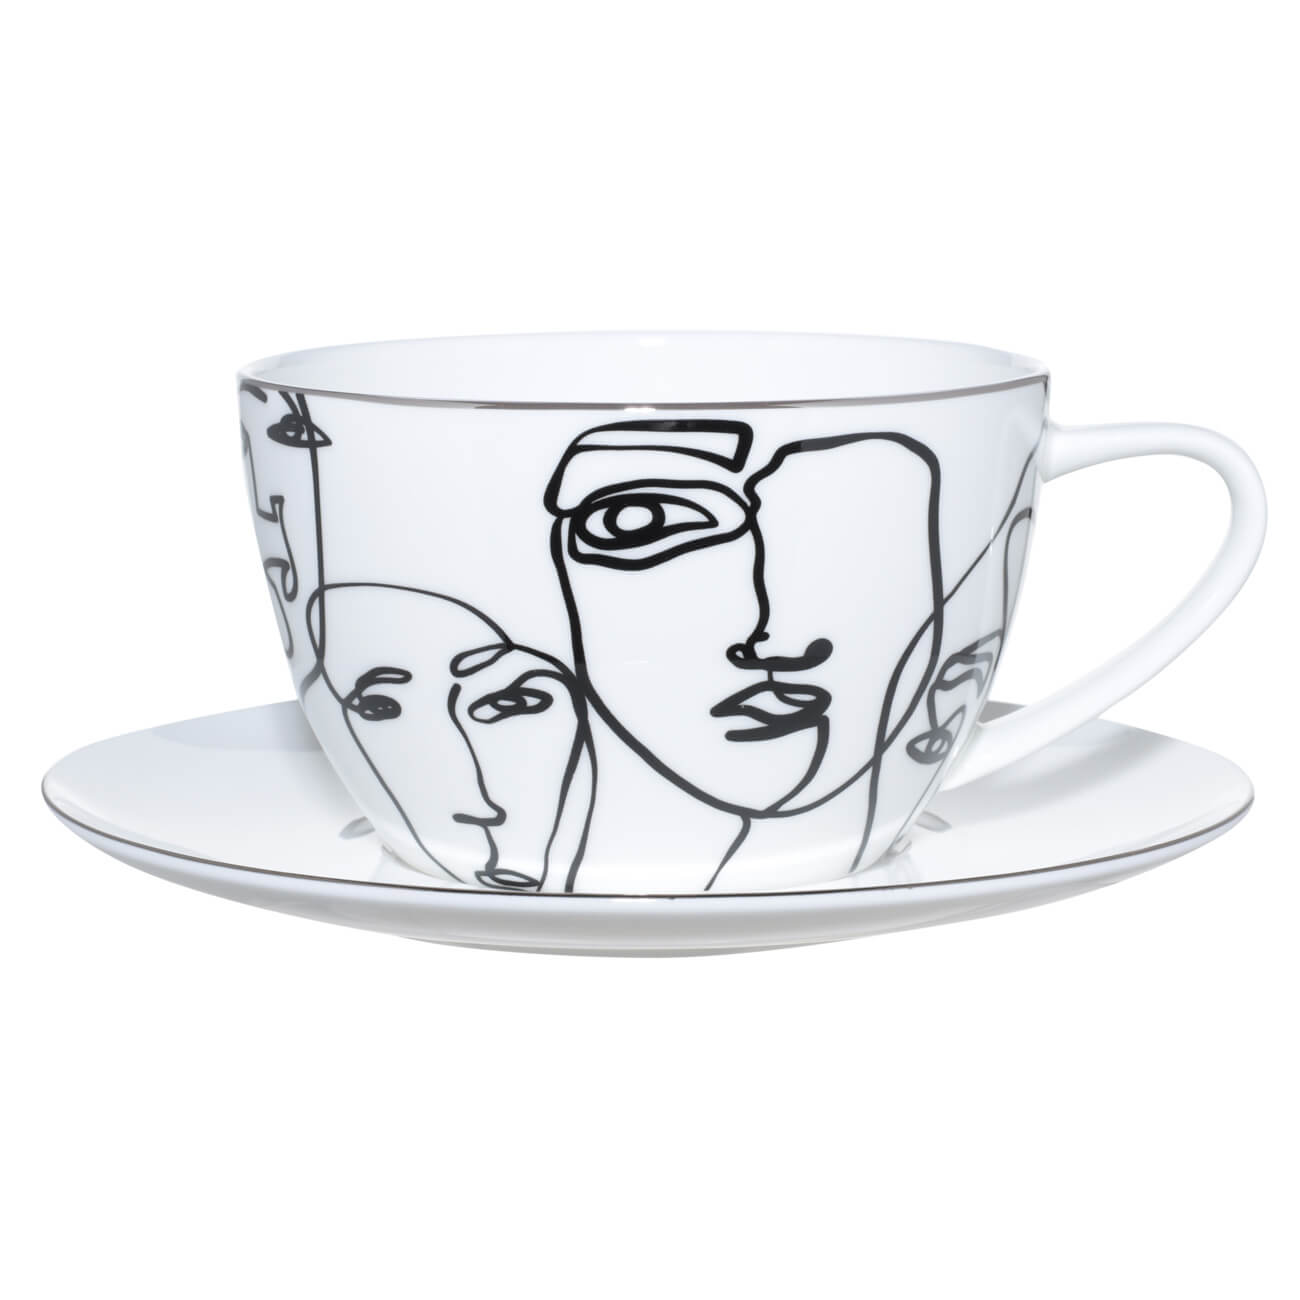 Пара чайная для завтрака, 1 перс, 2 пр, 480 мл, фарфор F, белая, Контурные лица, Face изображение № 1